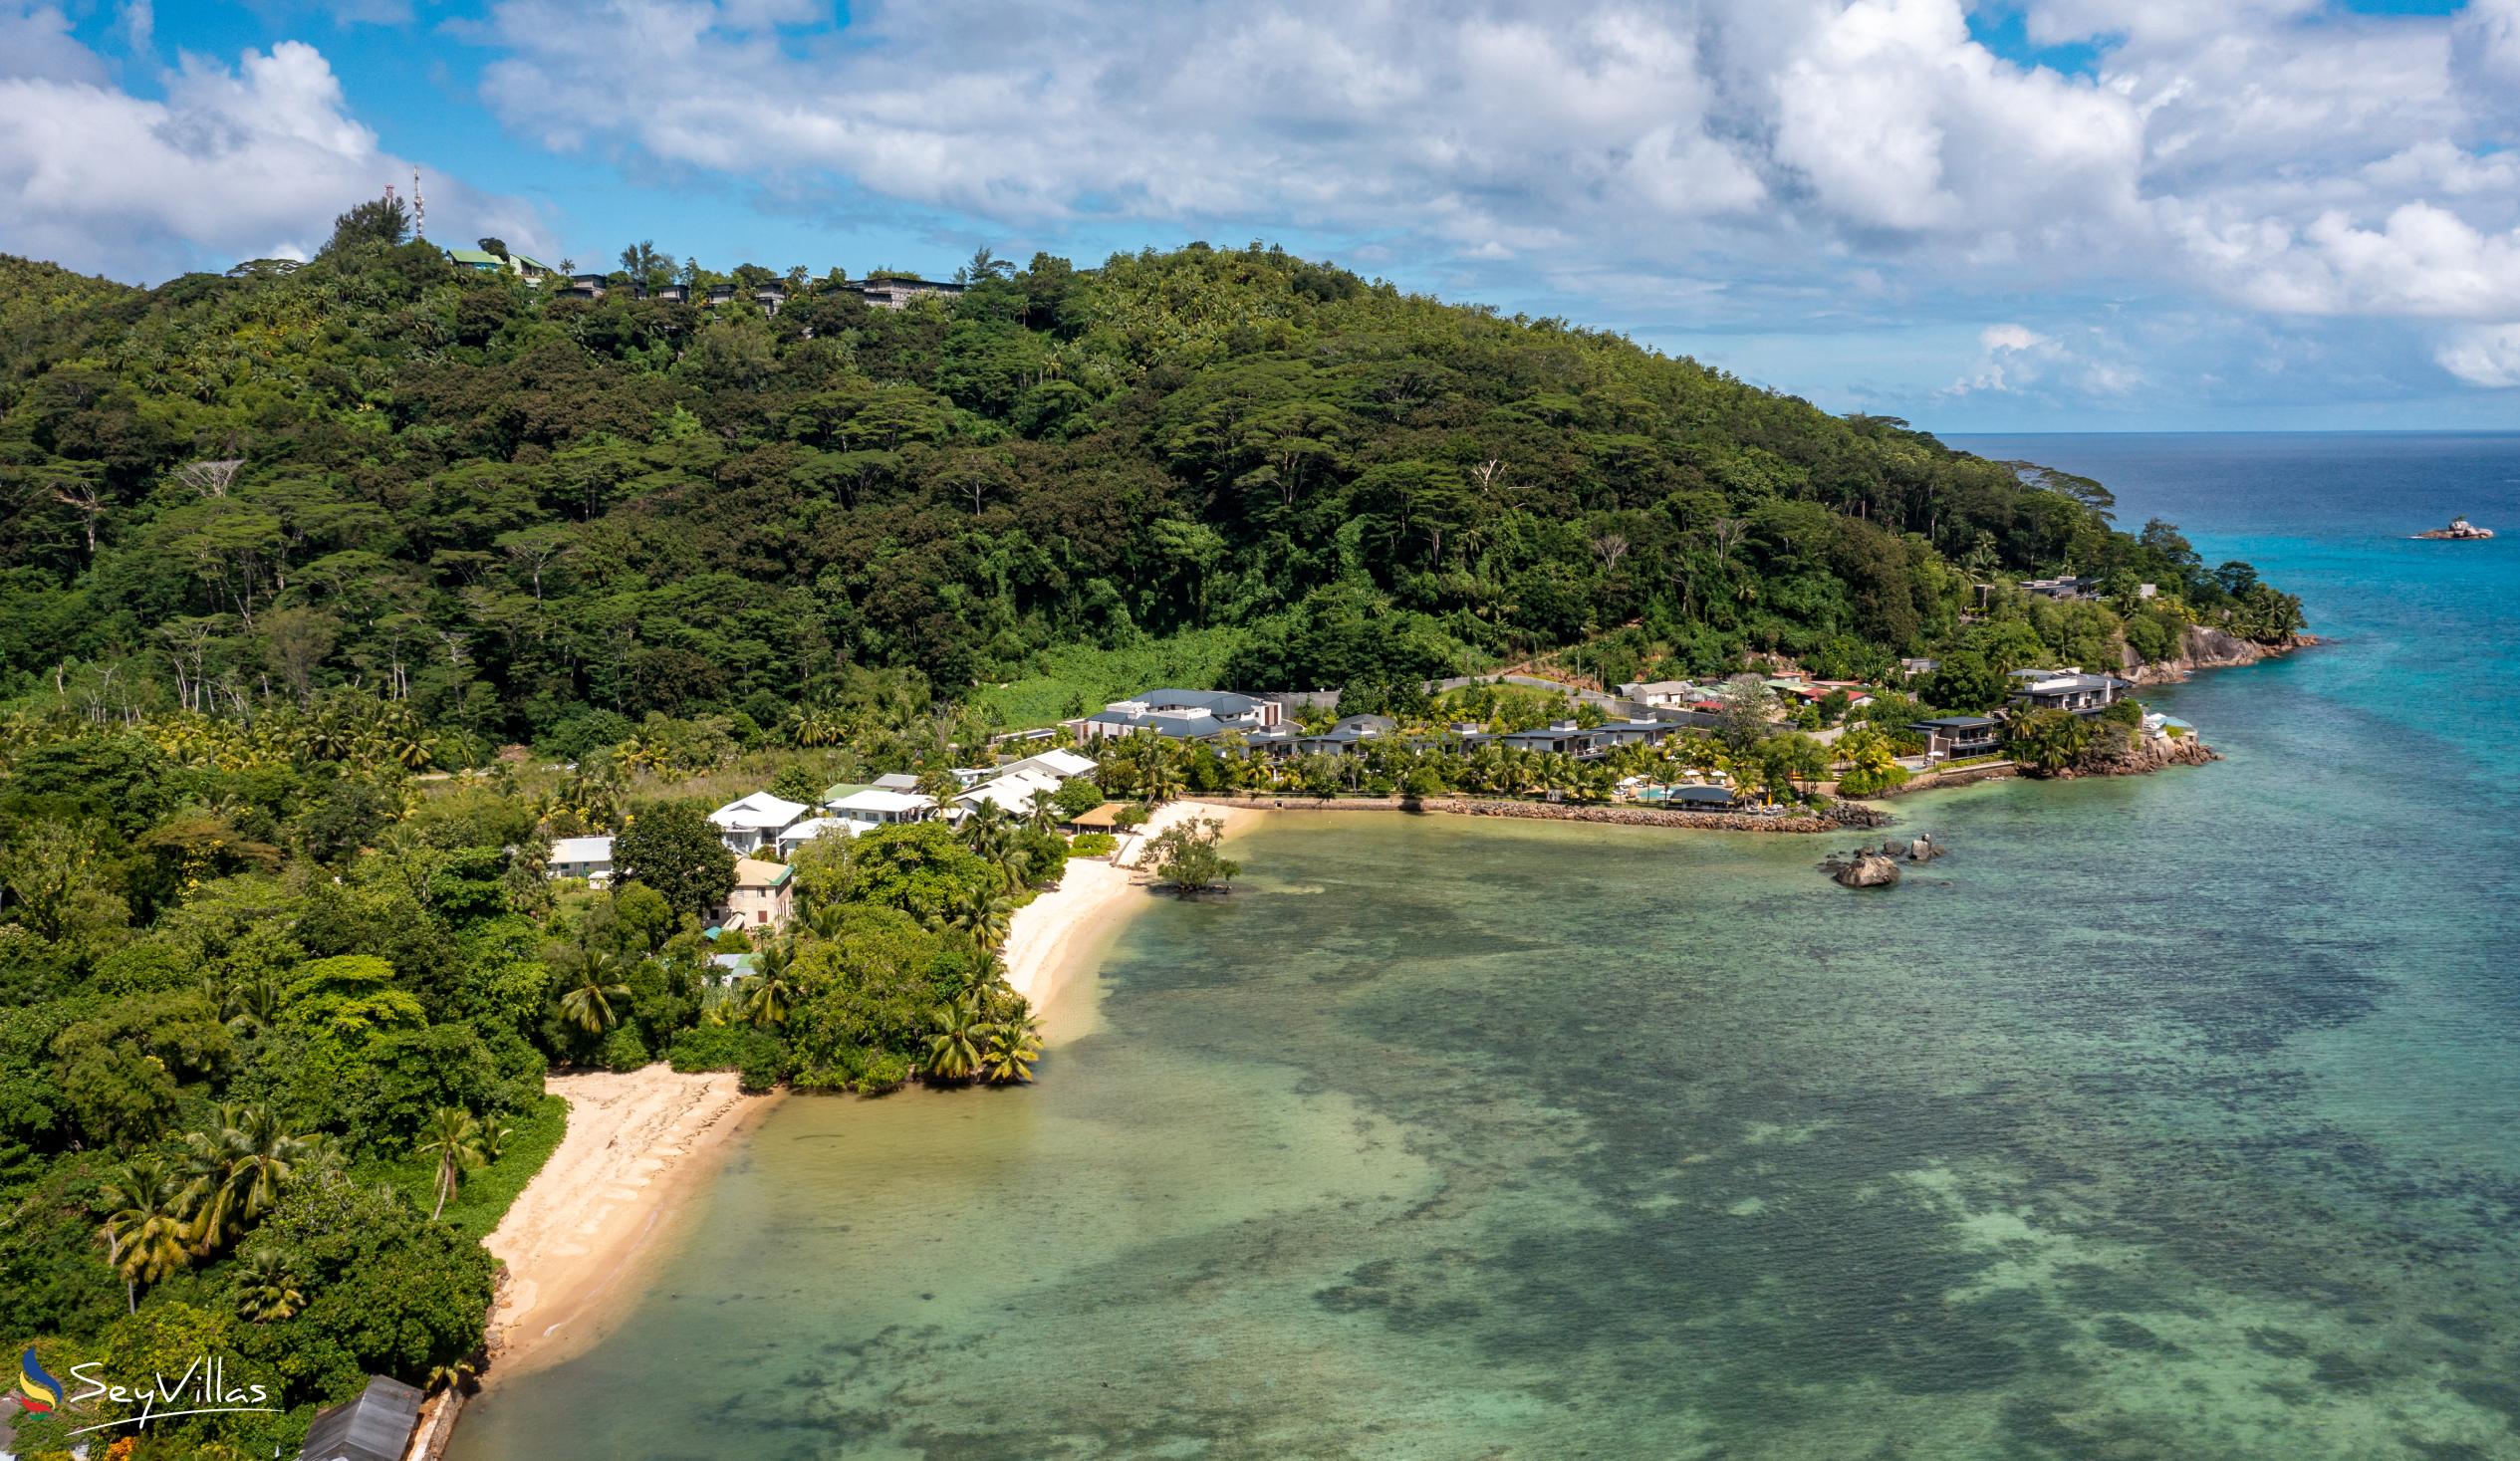 Photo 15: Paul's Residence - Location - Mahé (Seychelles)